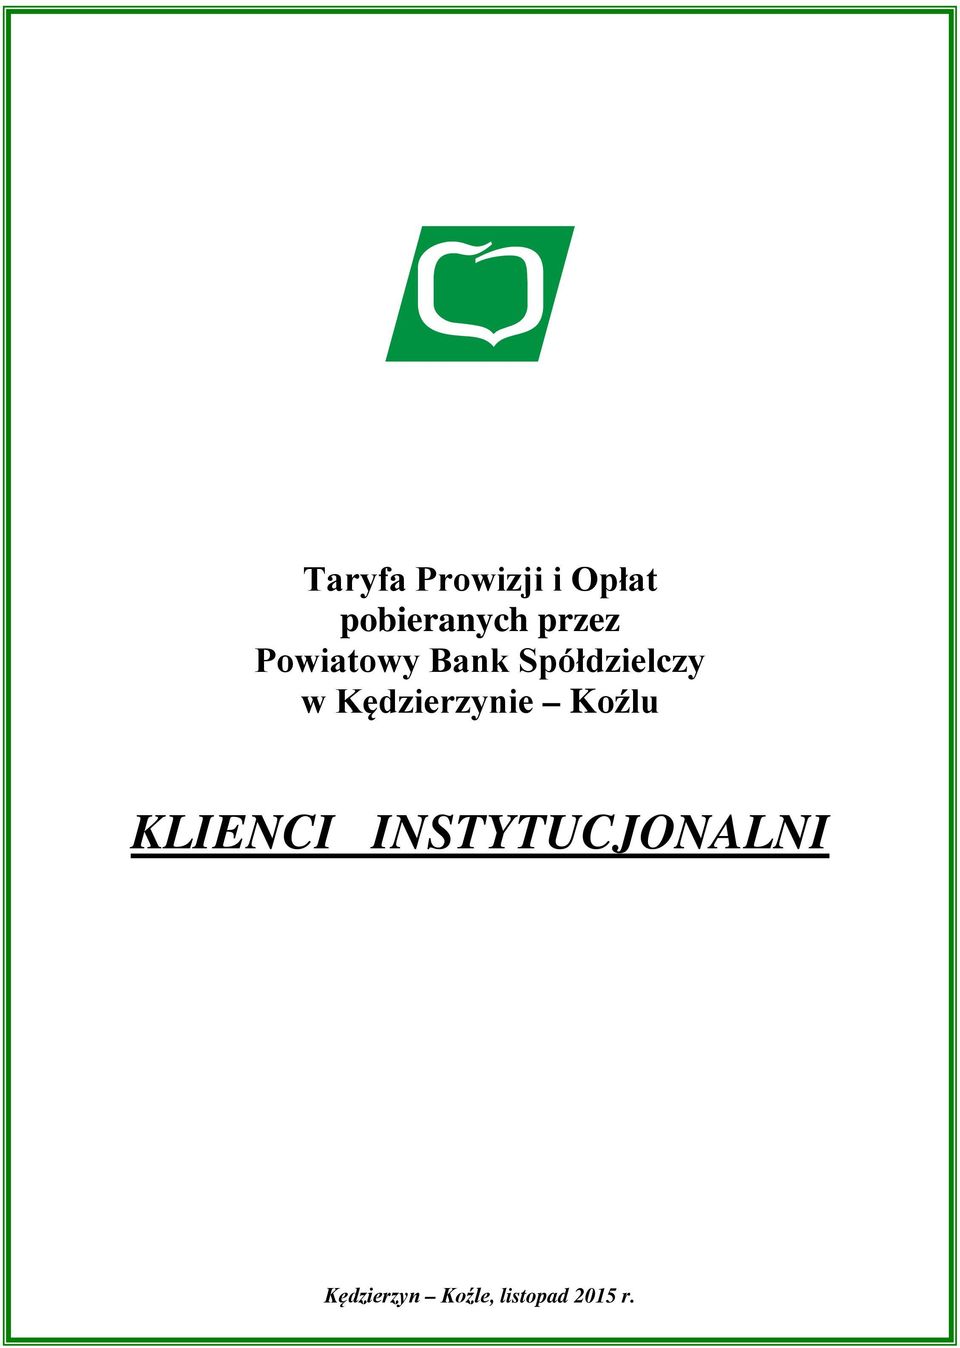 Taryfa Prowizji i Opłat pobieranych przez Powiatowy Bank